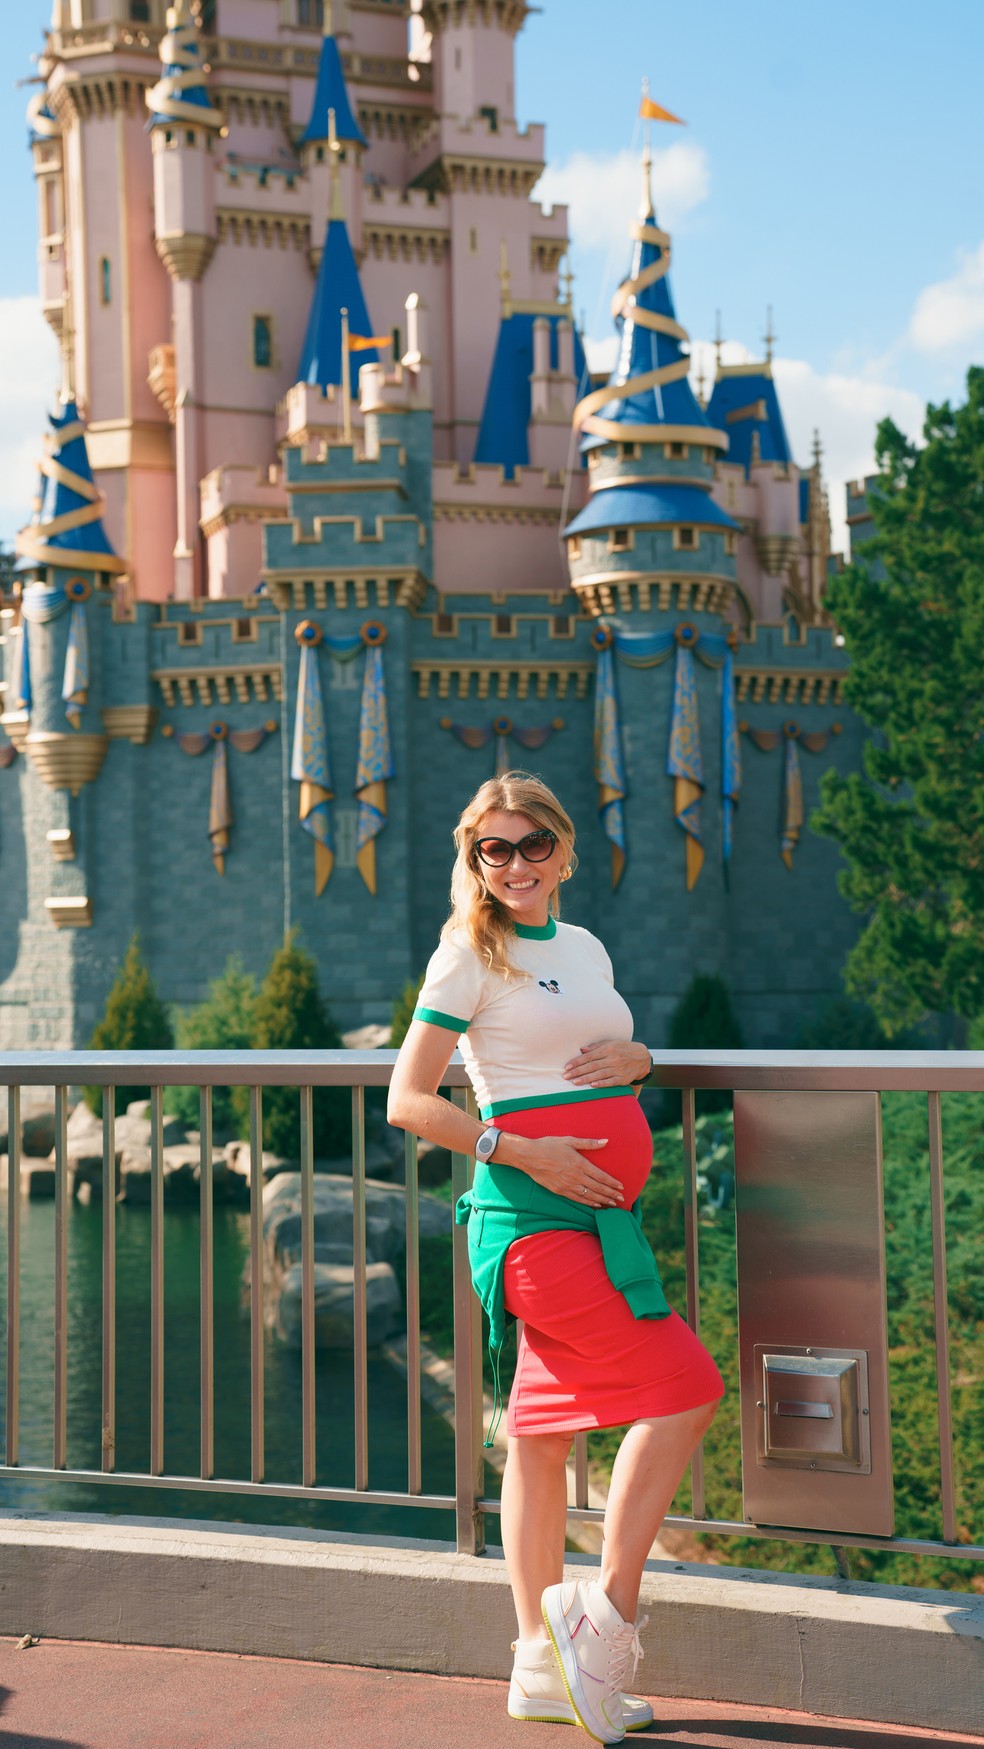 A médica veterinária Karoline Kleine aproveita as férias com a família enquanto aguarda o seu terceiro filho. No fundo, o castelo do Magic Kingdom, parque da Disney, em Orlando — Foto: Divulgação